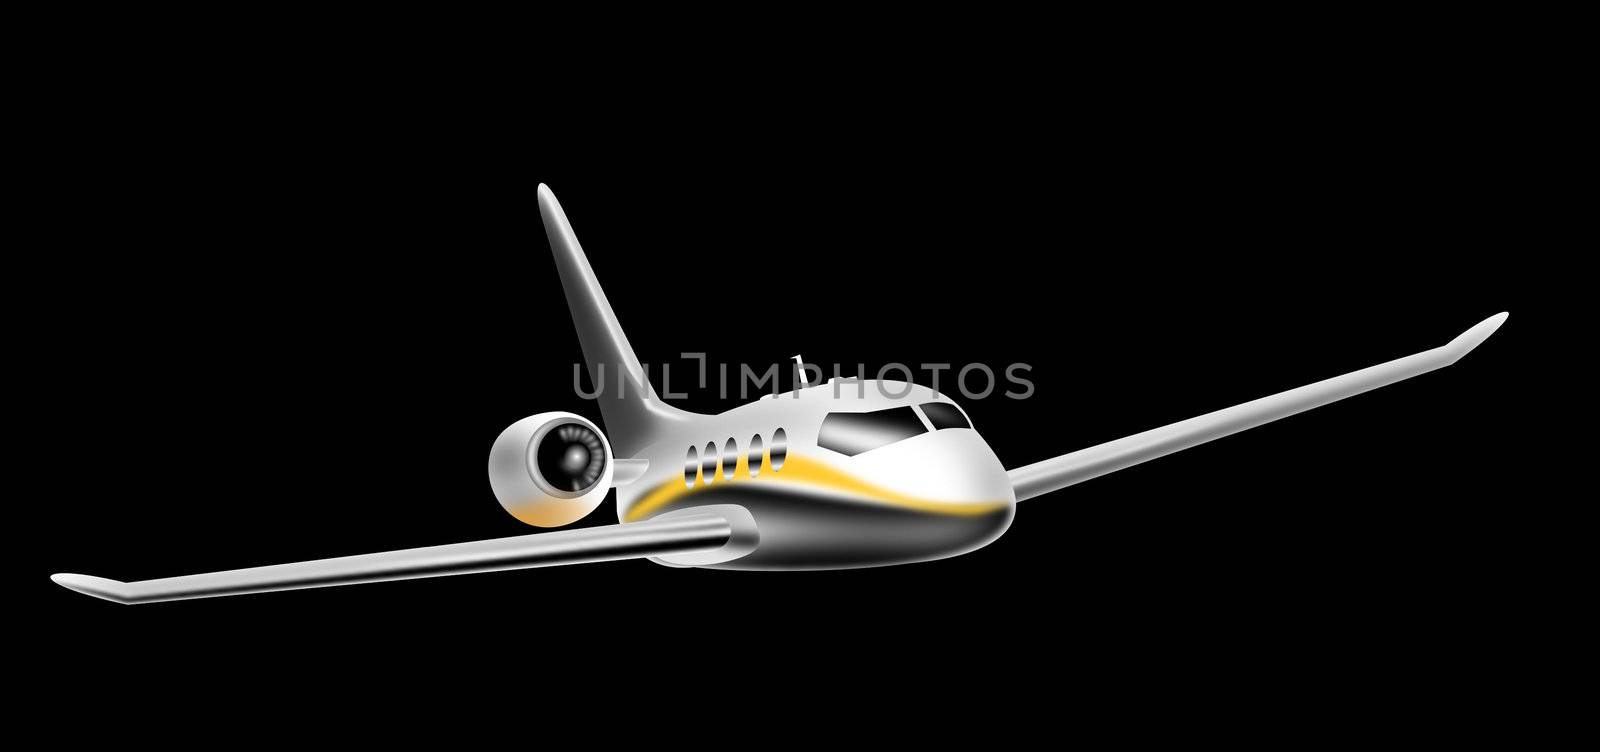 corporate jet aircraft by patrimonio